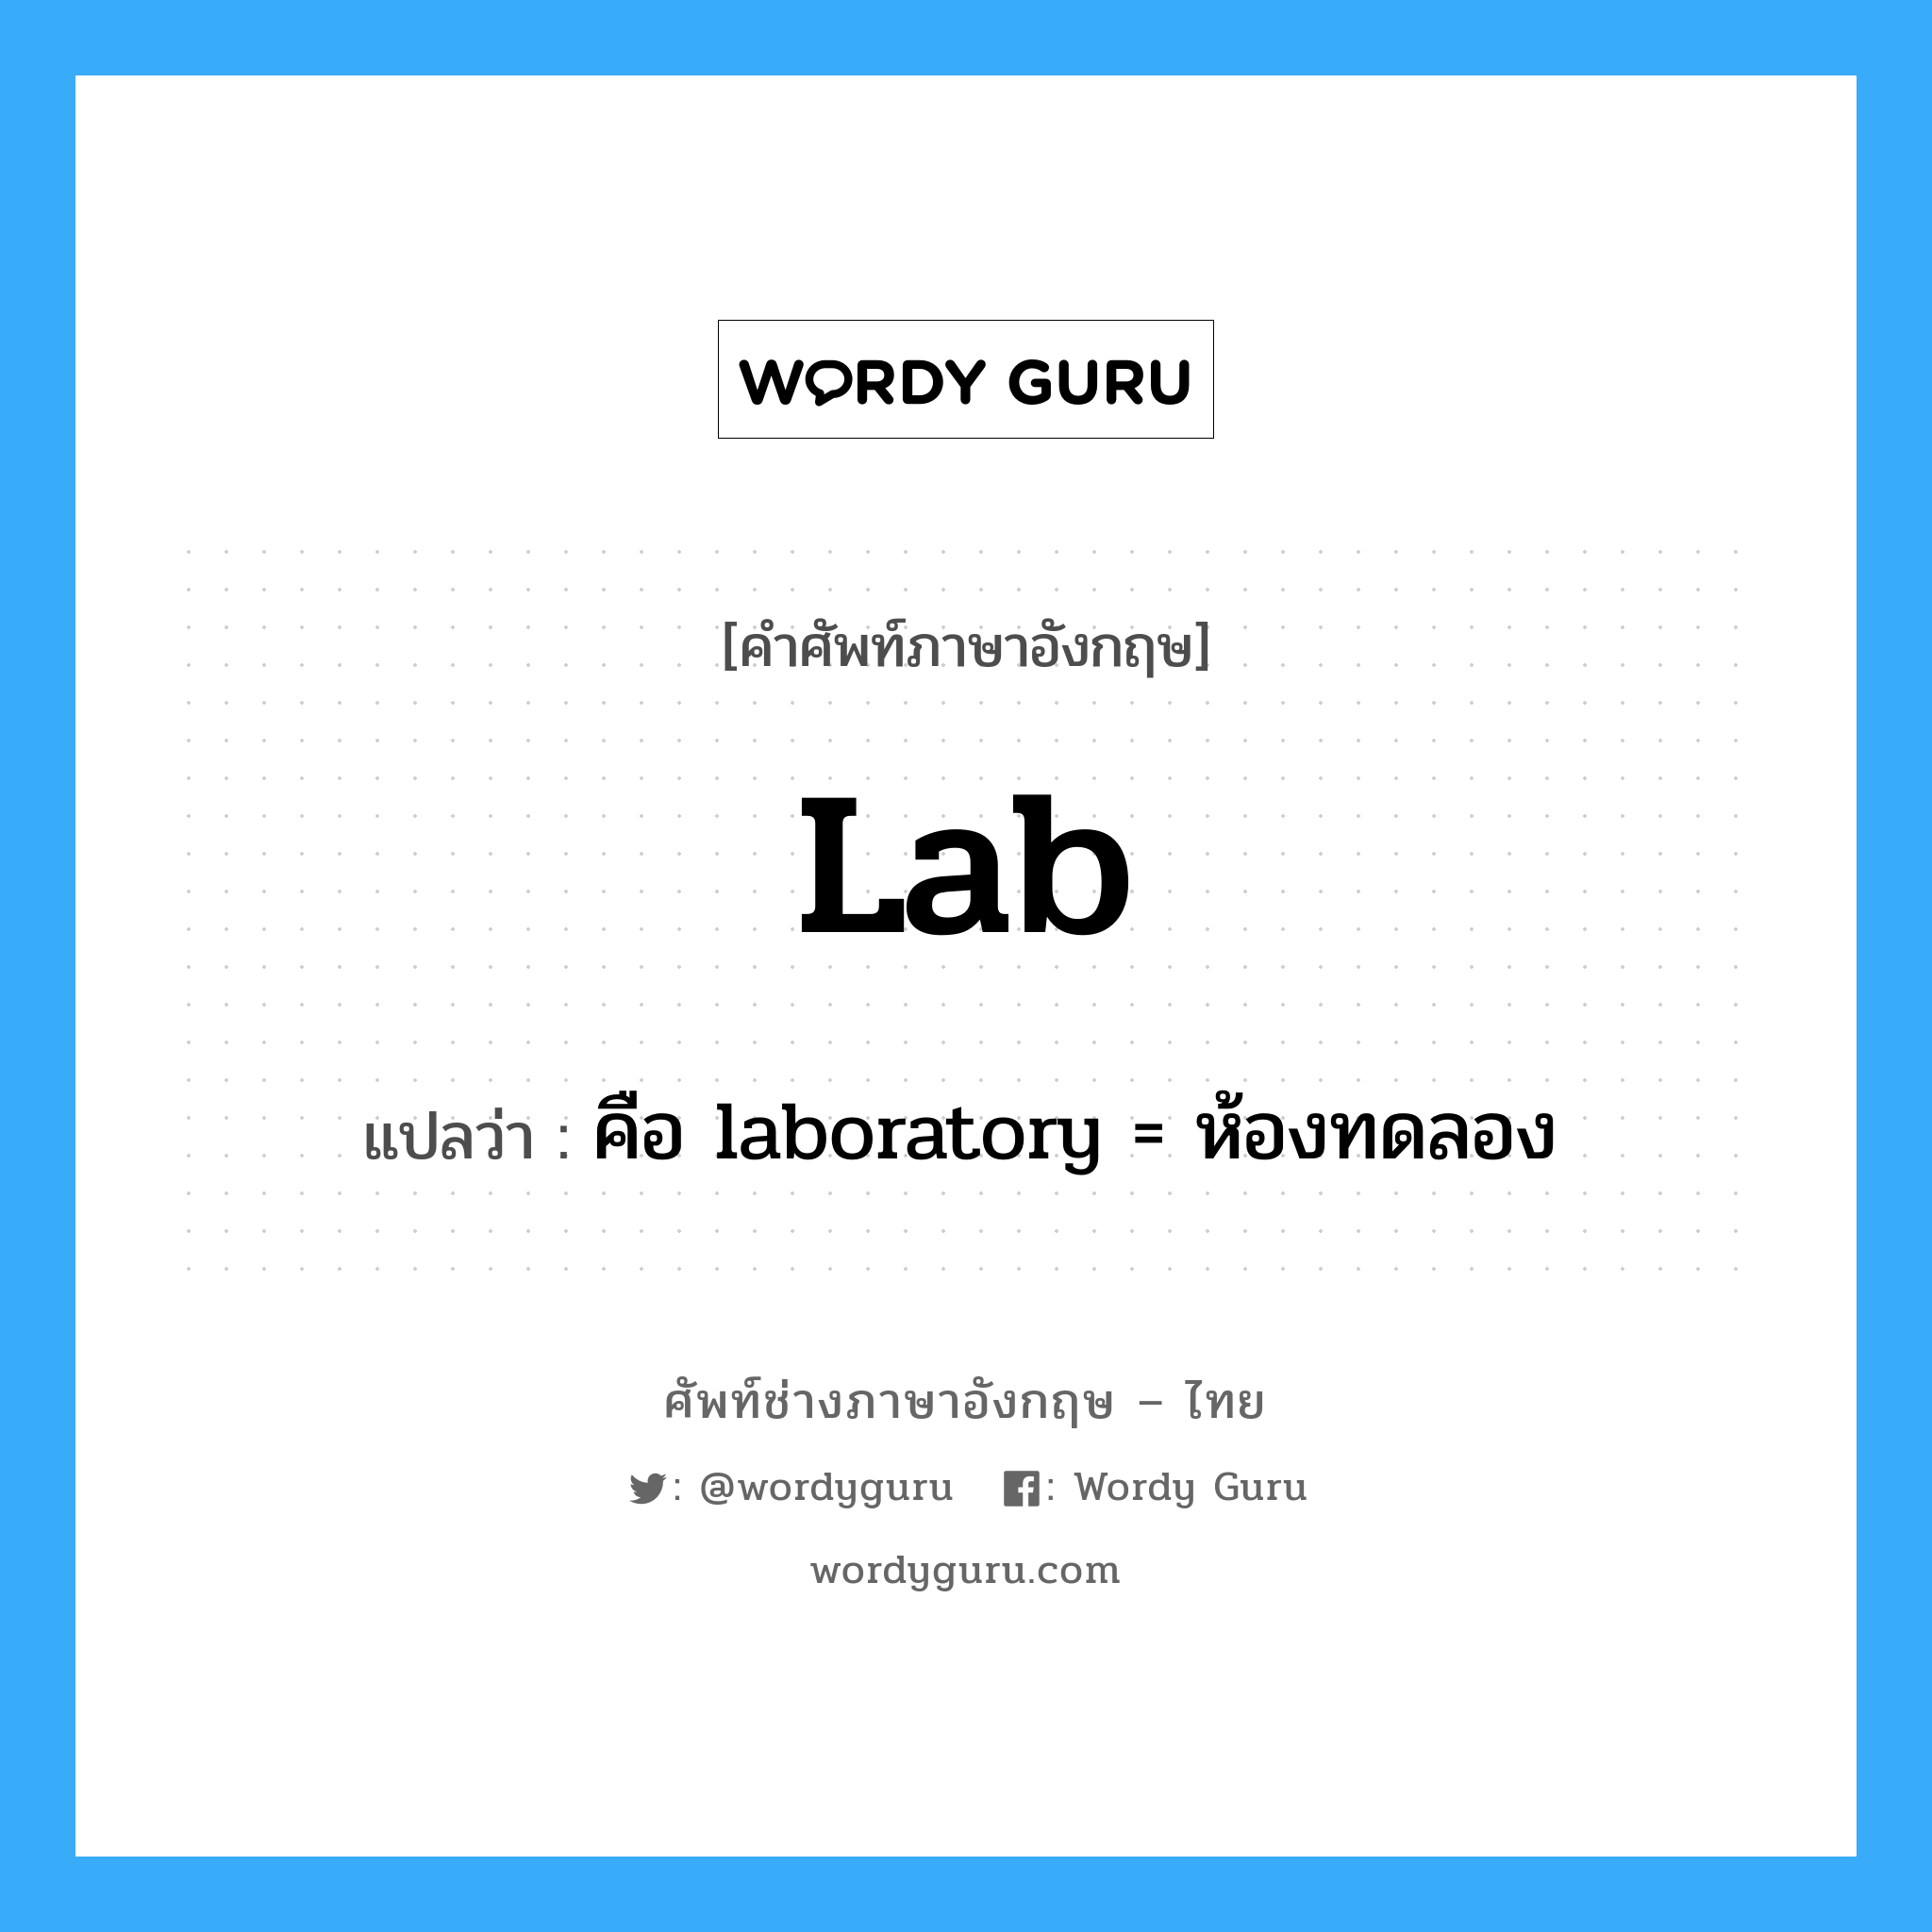 คือ laboratory = ห้องทดลอง ภาษาอังกฤษ?, คำศัพท์ช่างภาษาอังกฤษ - ไทย คือ laboratory = ห้องทดลอง คำศัพท์ภาษาอังกฤษ คือ laboratory = ห้องทดลอง แปลว่า lab